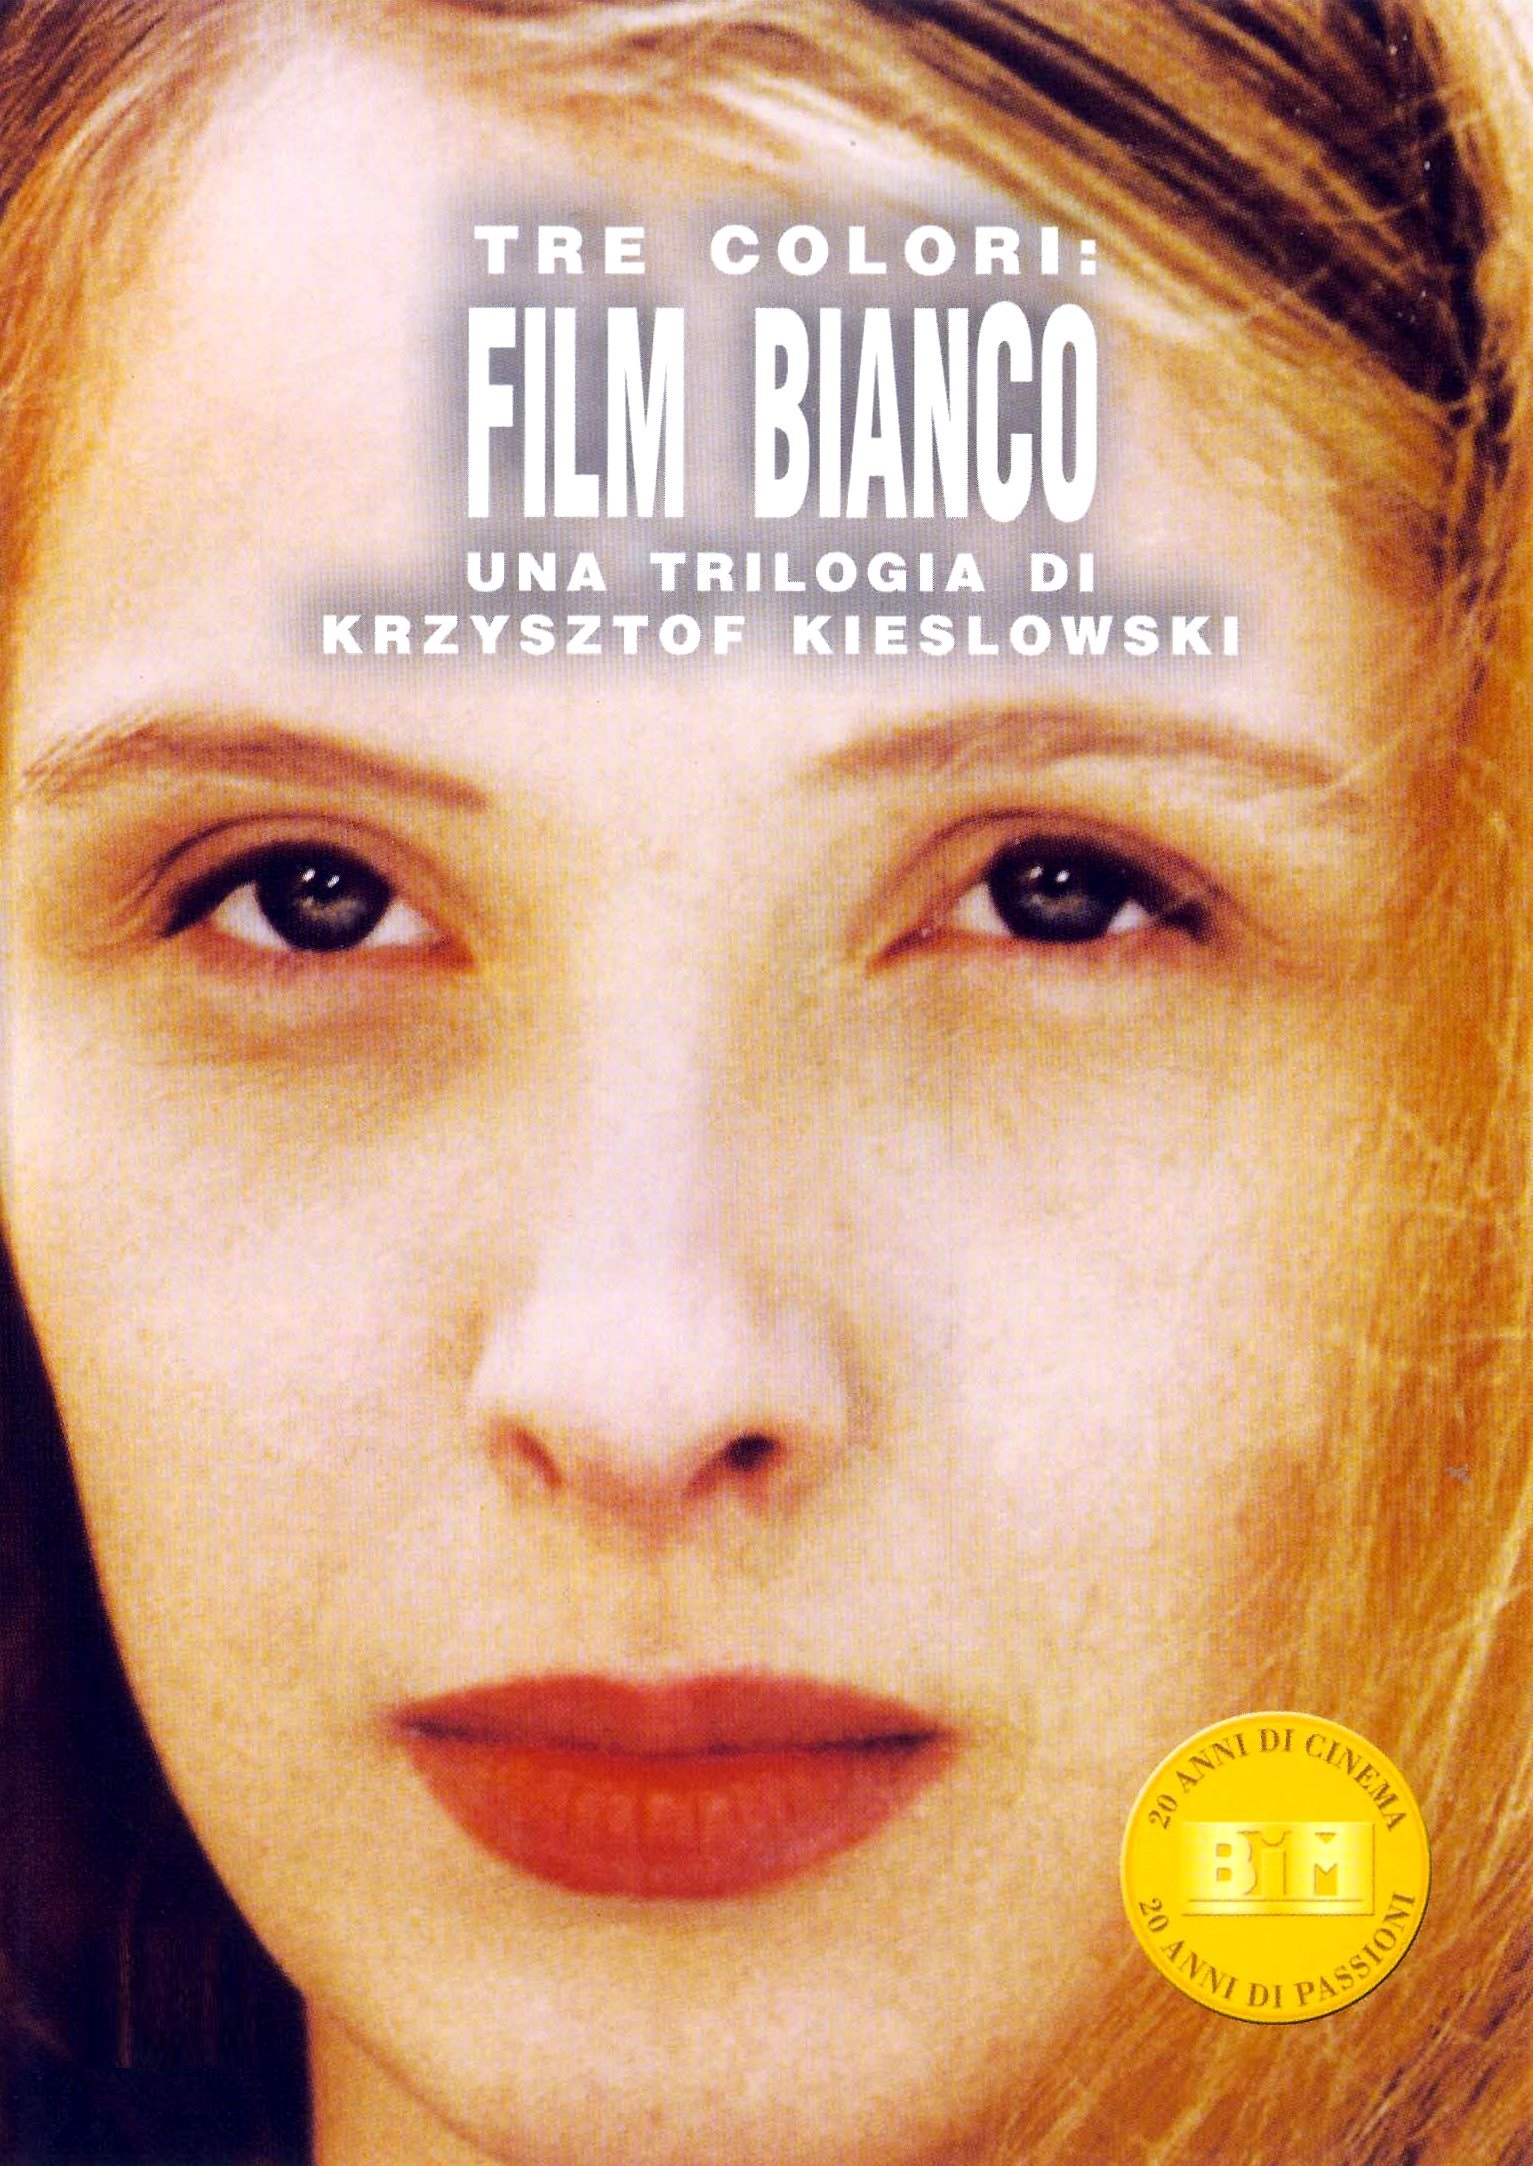 Tre colori: Film bianco [HD] (1993)